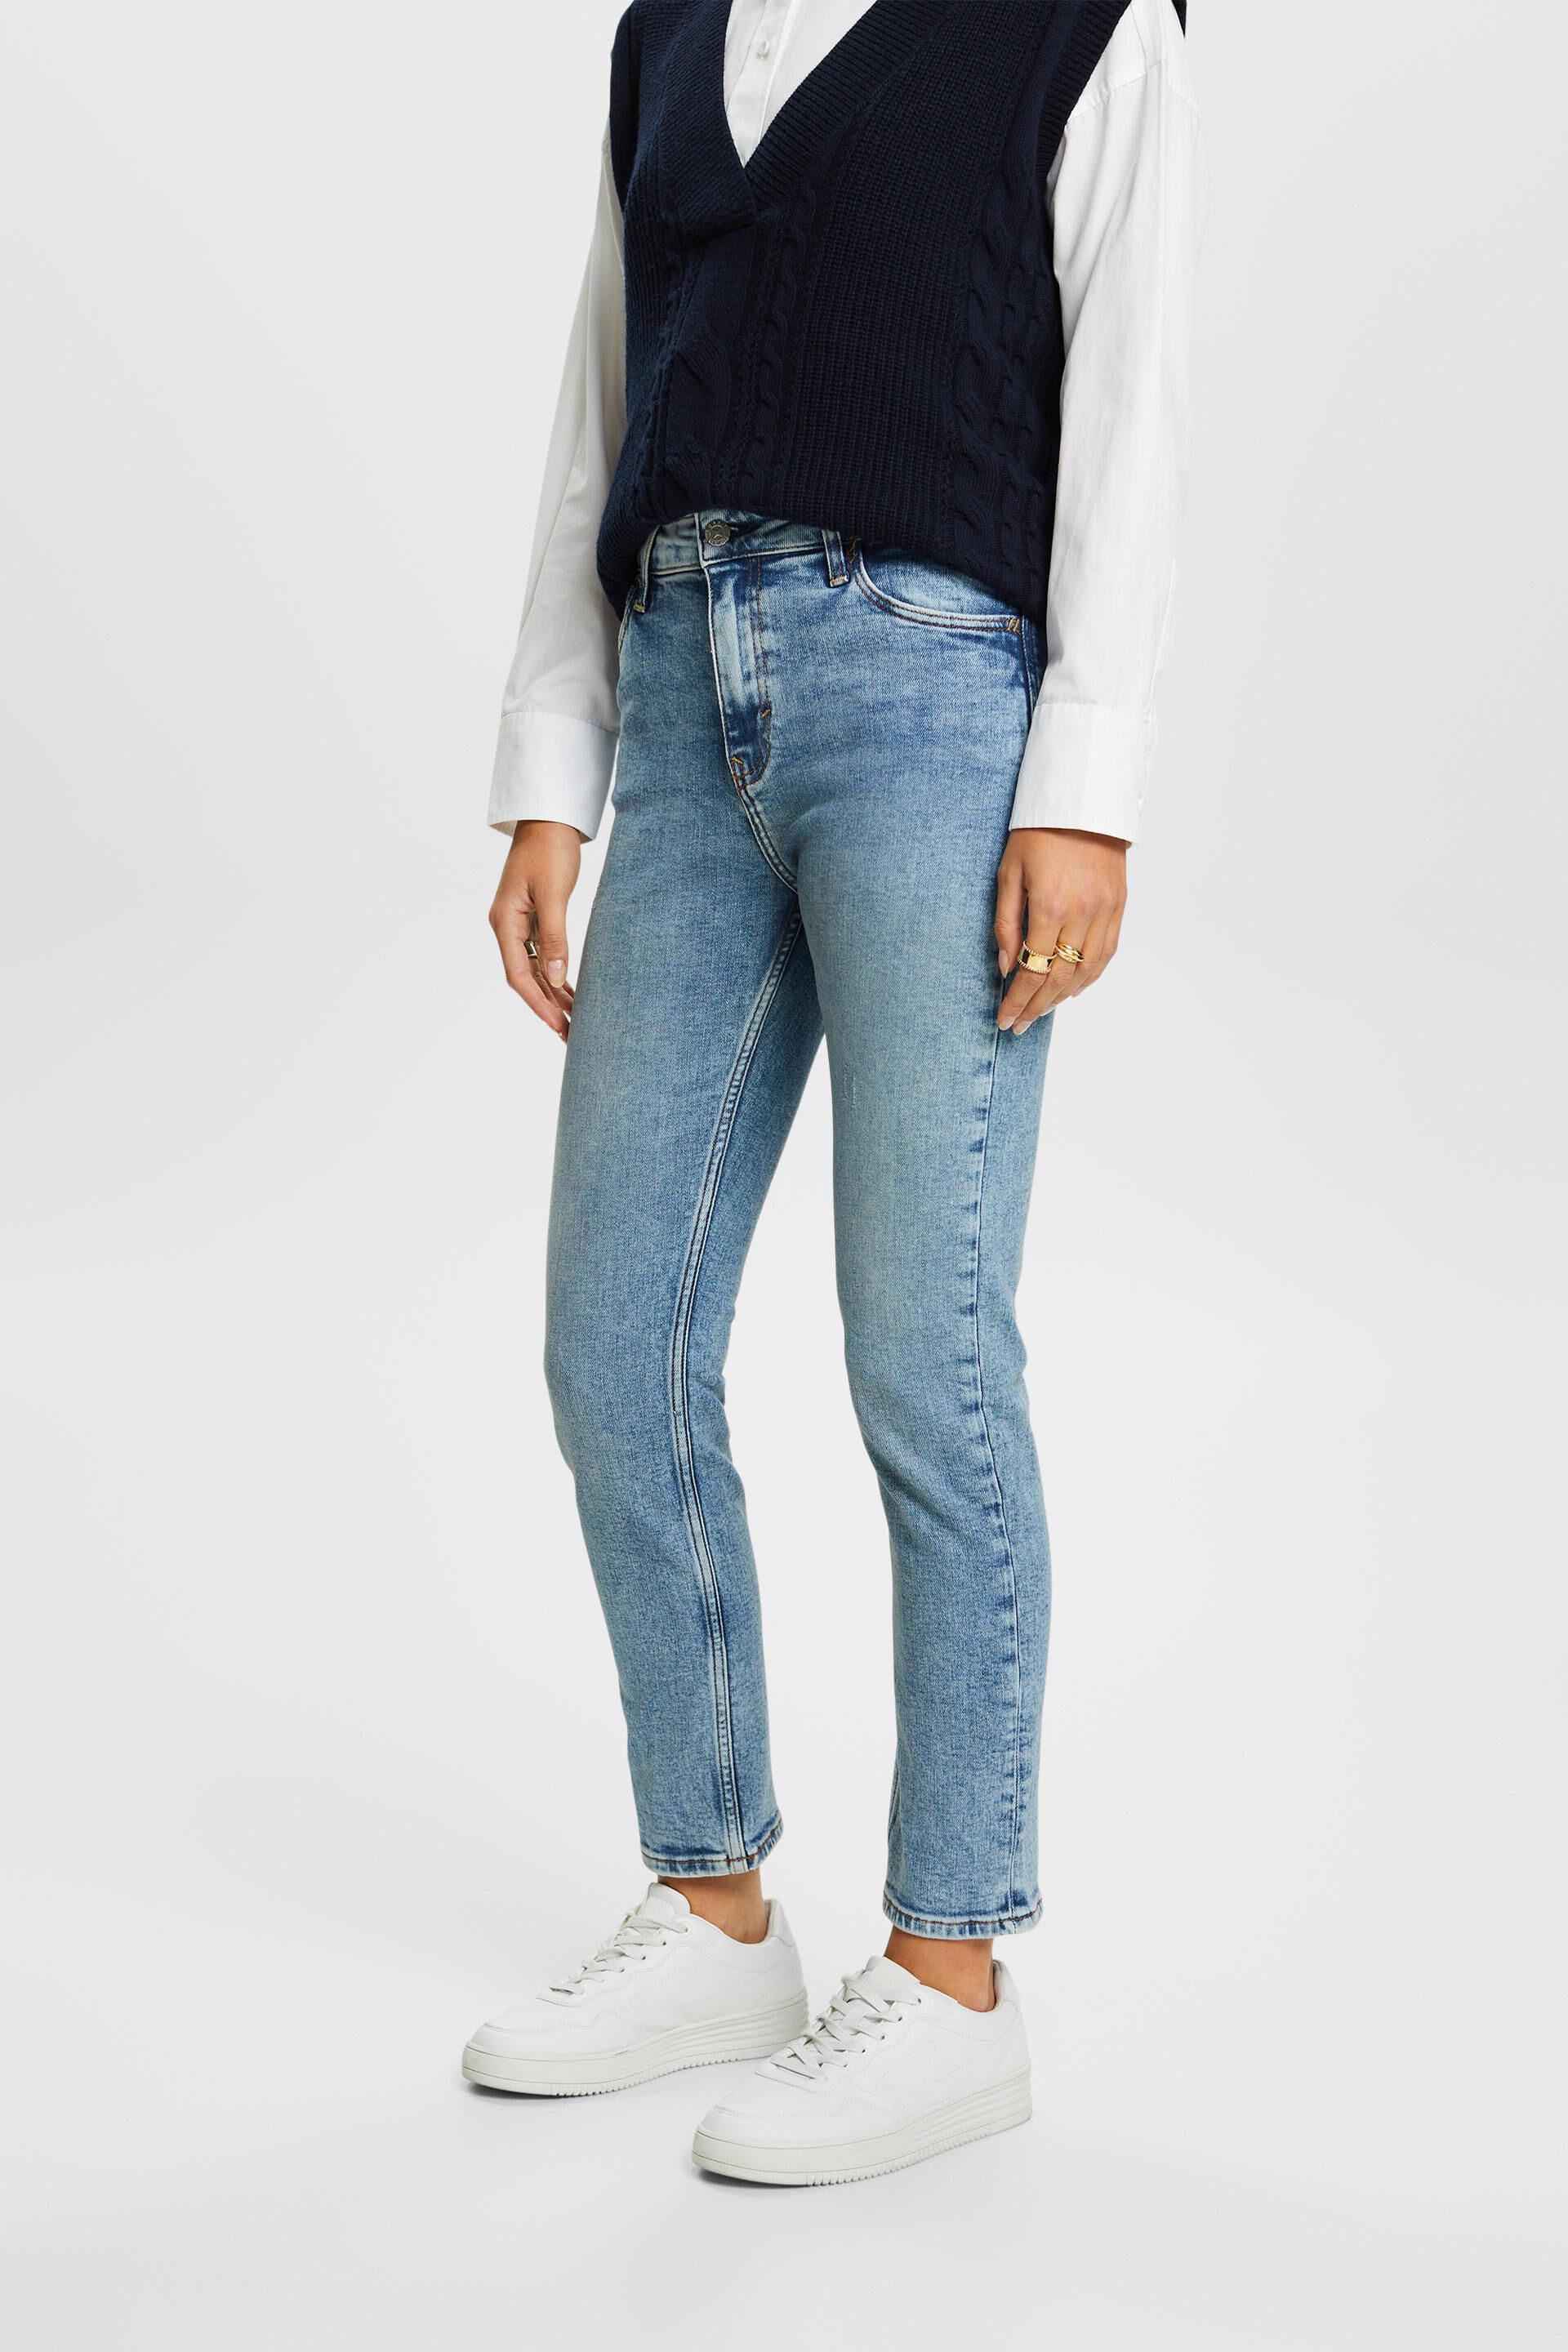 Esprit fit jeans stretch Premium slim